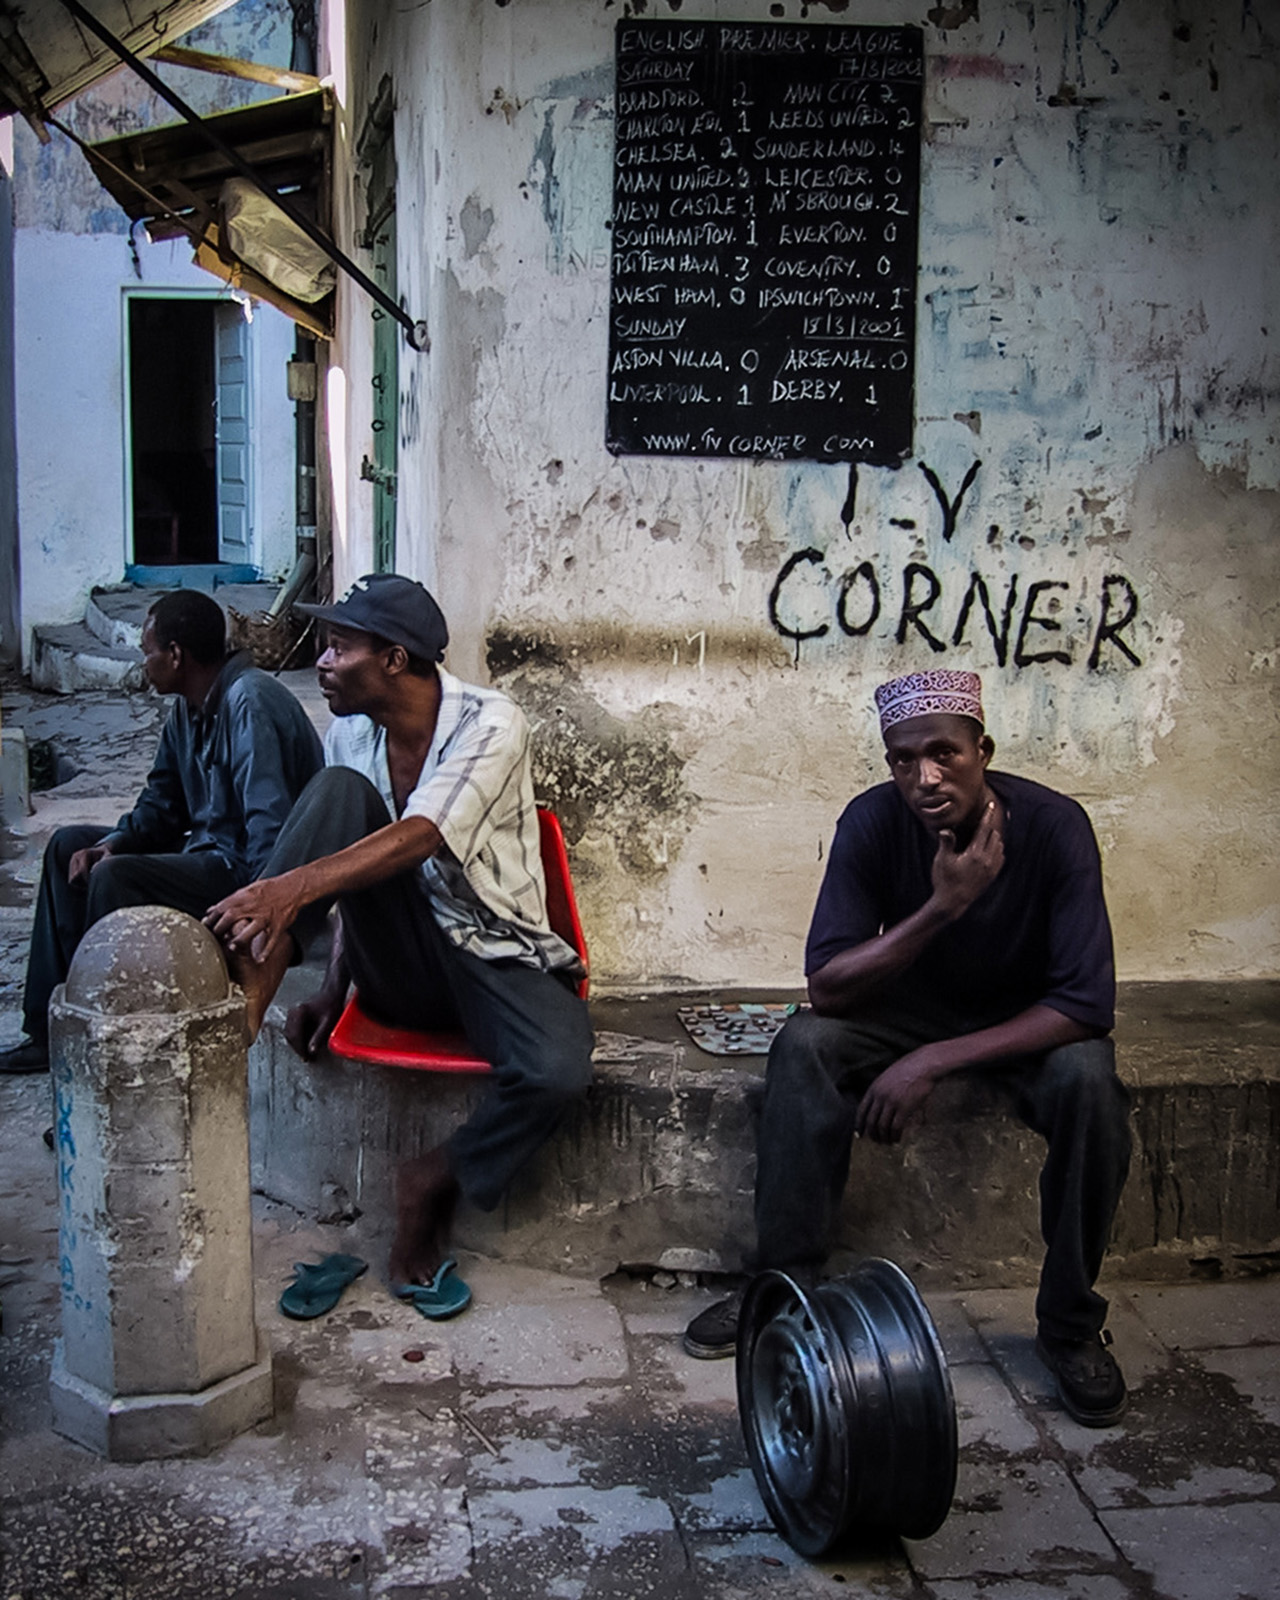 TV Corner in Zanzibar (Peter Moore)